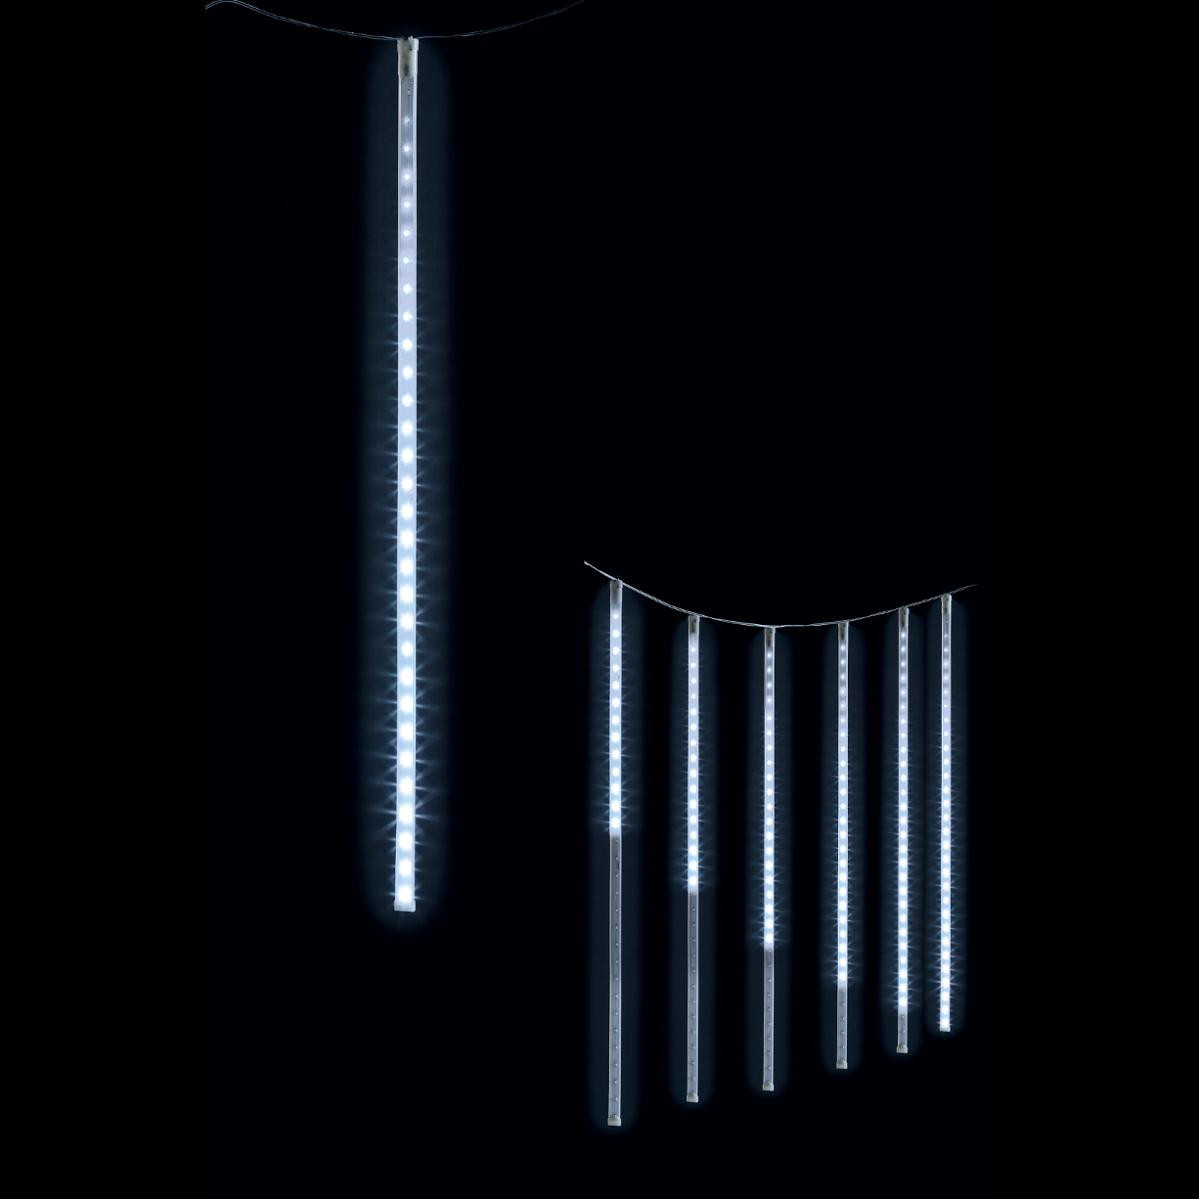 https://www.decomania.fr/696340-product_hd/decoration-lumineuse-de-noel-rideau-lumineux-210-led-de-7-tubes-pour-exterieur-blanc-froid.jpg